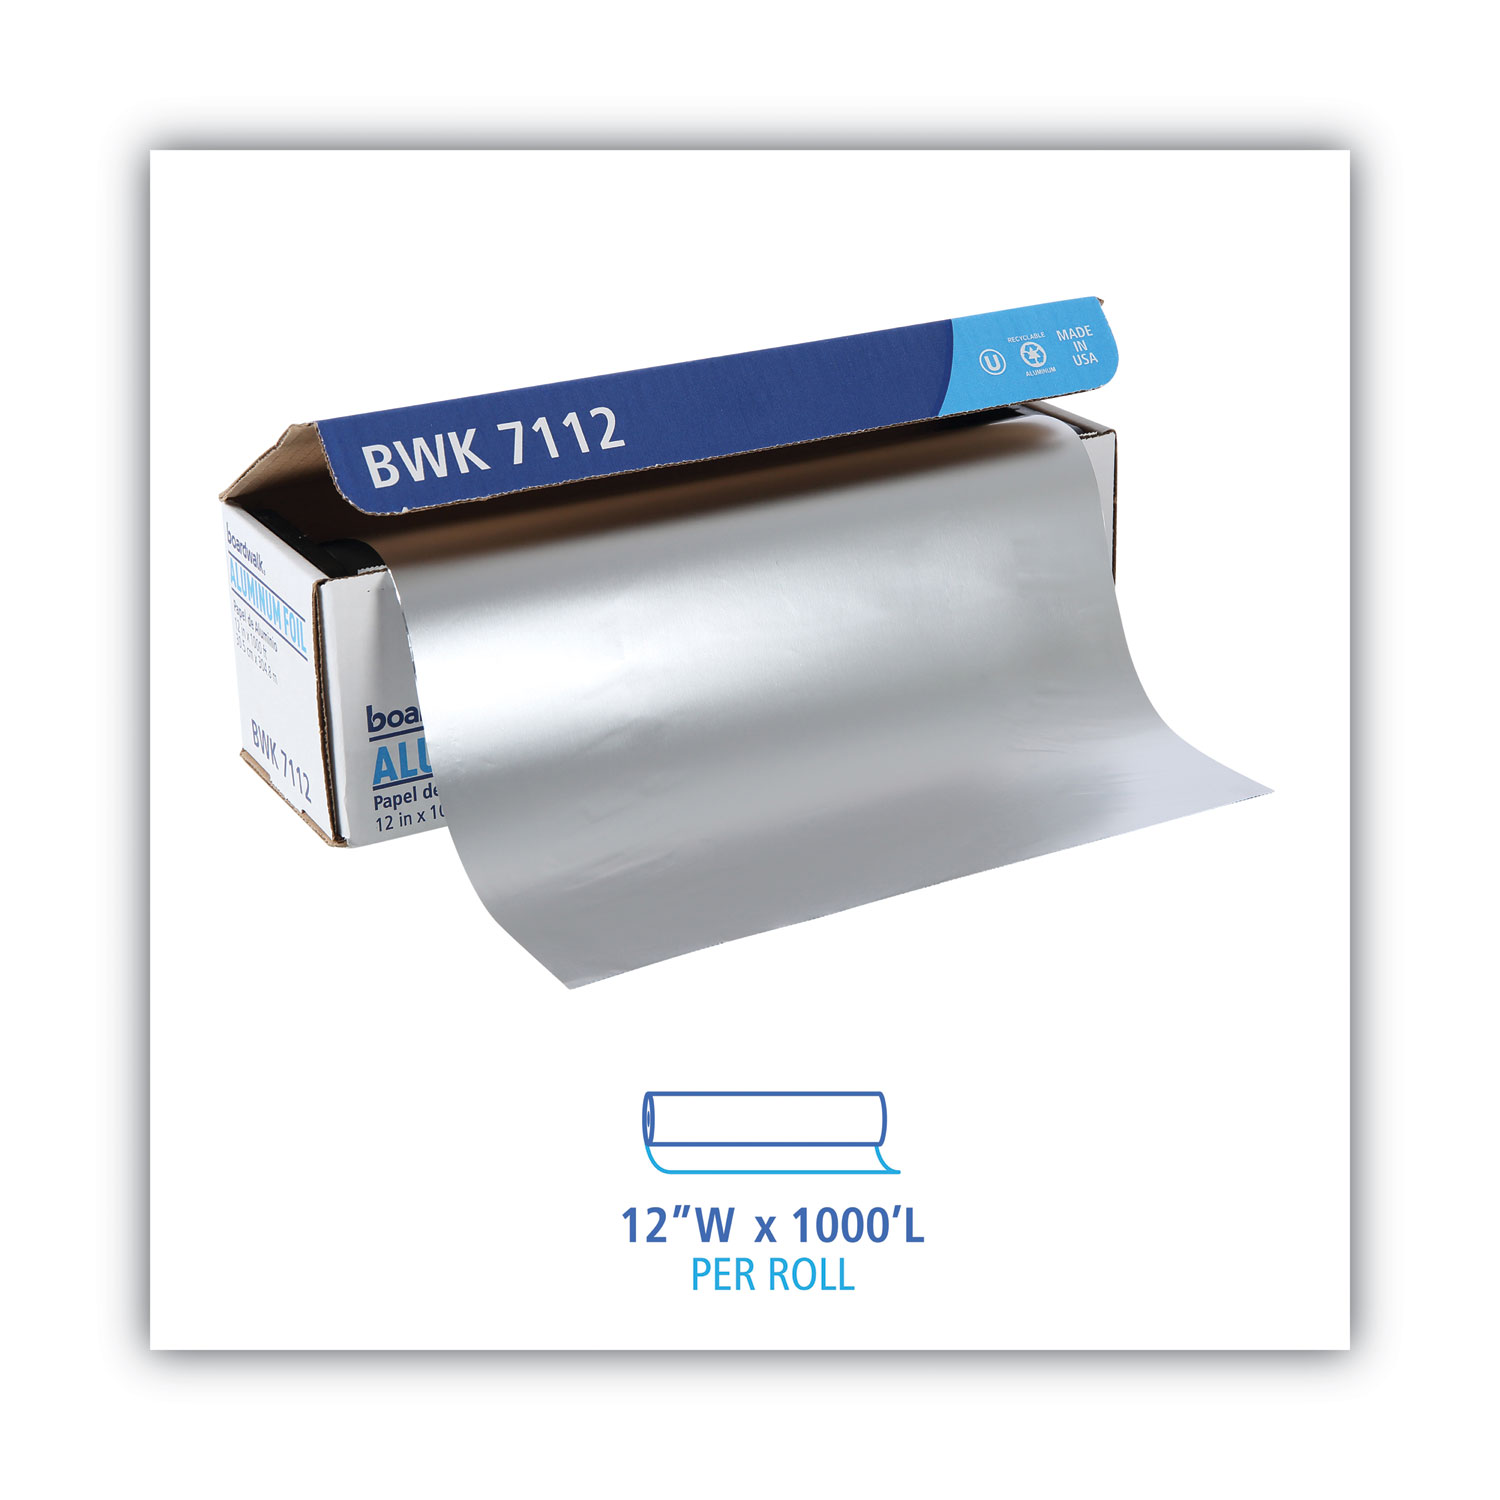 Karat 12x 1000' Standard Aluminum Foil Roll - 1 roll